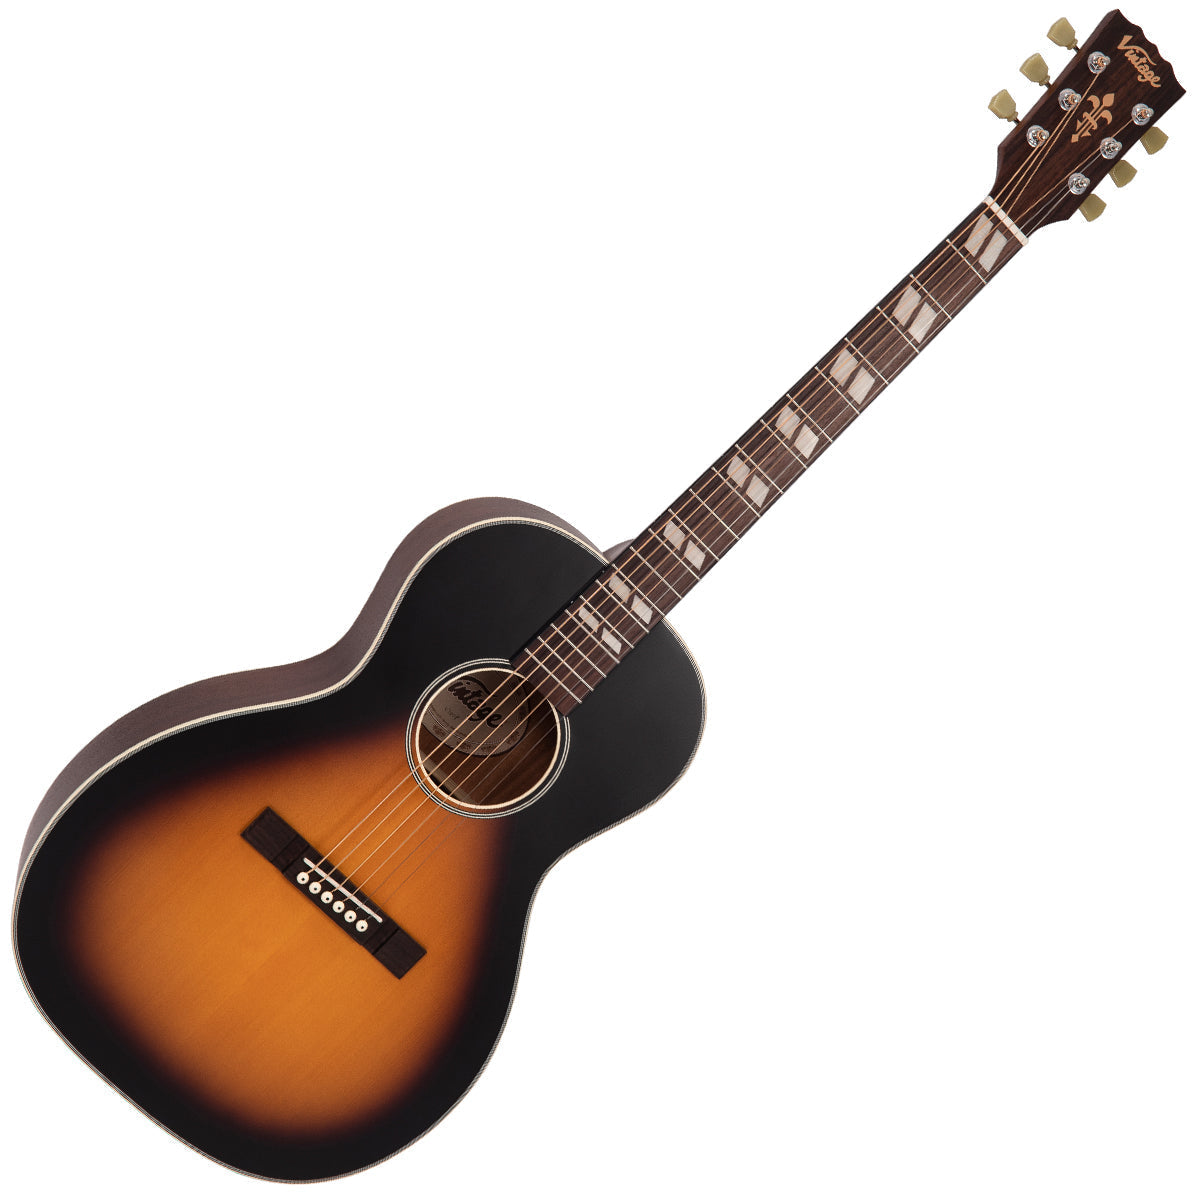 Vintage Historic Series 'Parlour' Acoustic Guitar ~ Vintage Sunburst, Acoustic Guitar for sale at Richards Guitars.